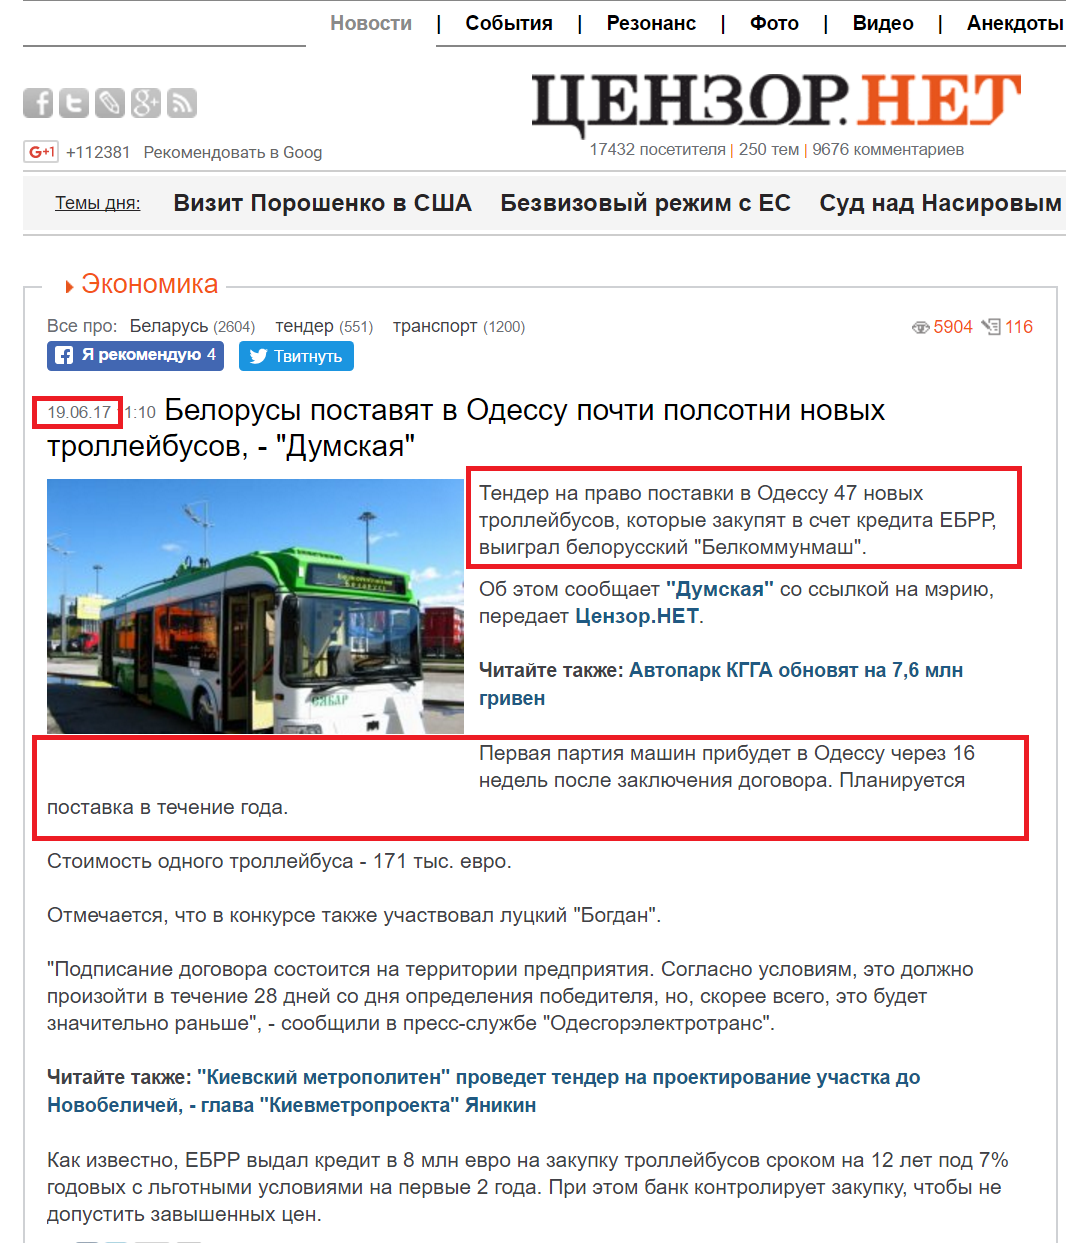 https://censor.net.ua/news/444623/belorusy_postavyat_v_odessu_pochti_polsotni_novyh_trolleyibusov_dumskaya